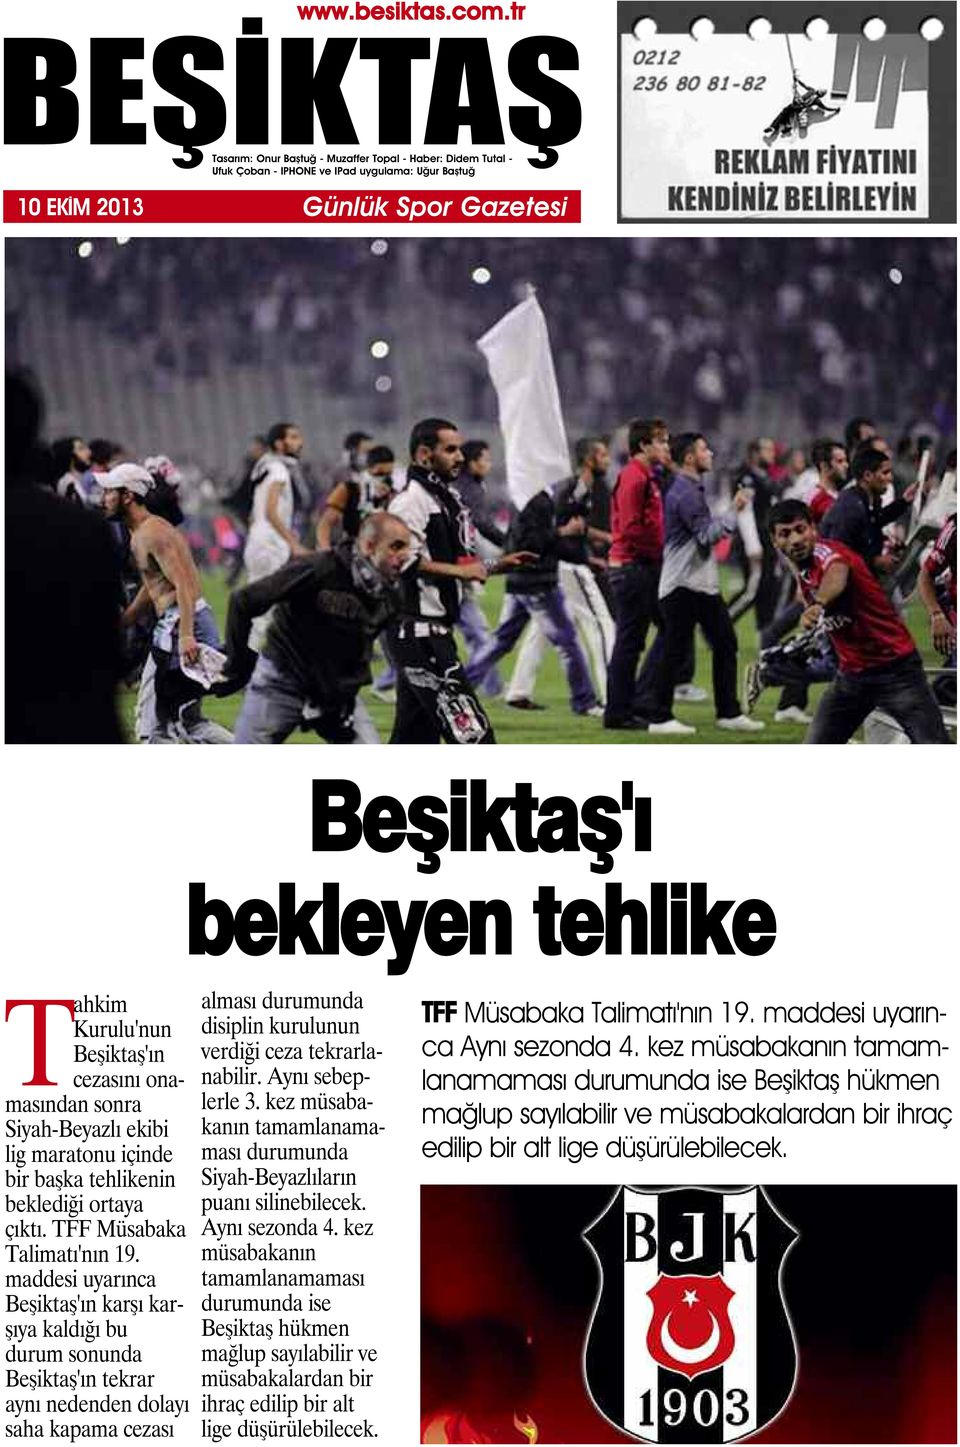 maddesi uyarınca Beşiktaş'ın karşı karşıya kaldığı bu durum sonunda Beşiktaş'ın tekrar aynı nedenden dolayı saha kapama cezası alması durumunda disiplin kurulunun verdiği ceza tekrarlanabilir.